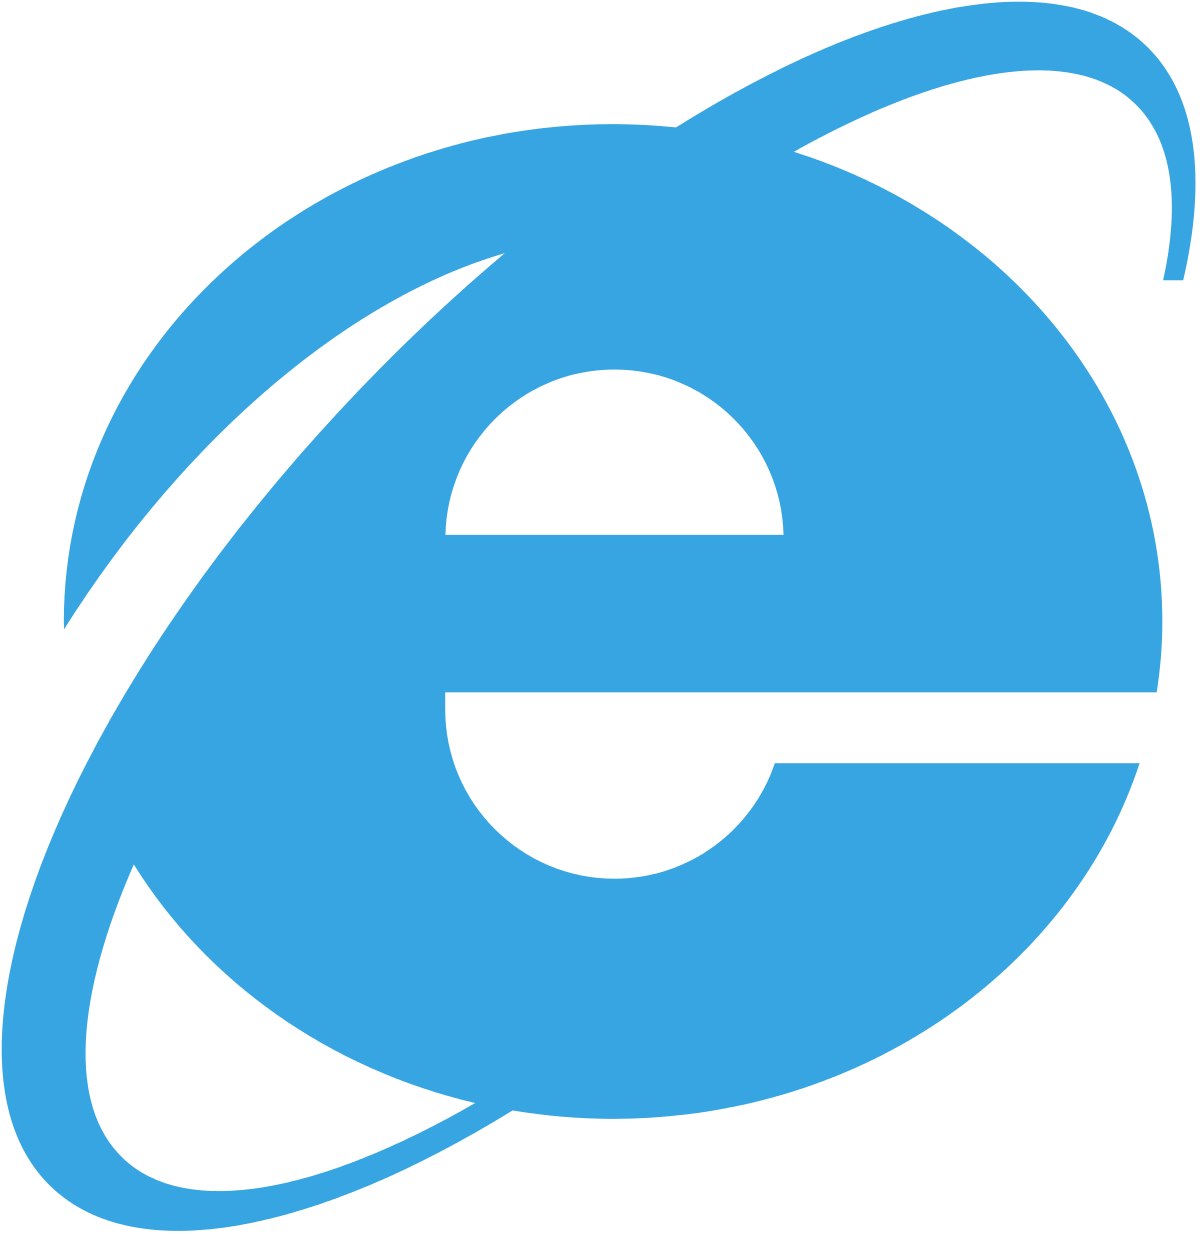 MSIE Logo - Internet Explorer 5